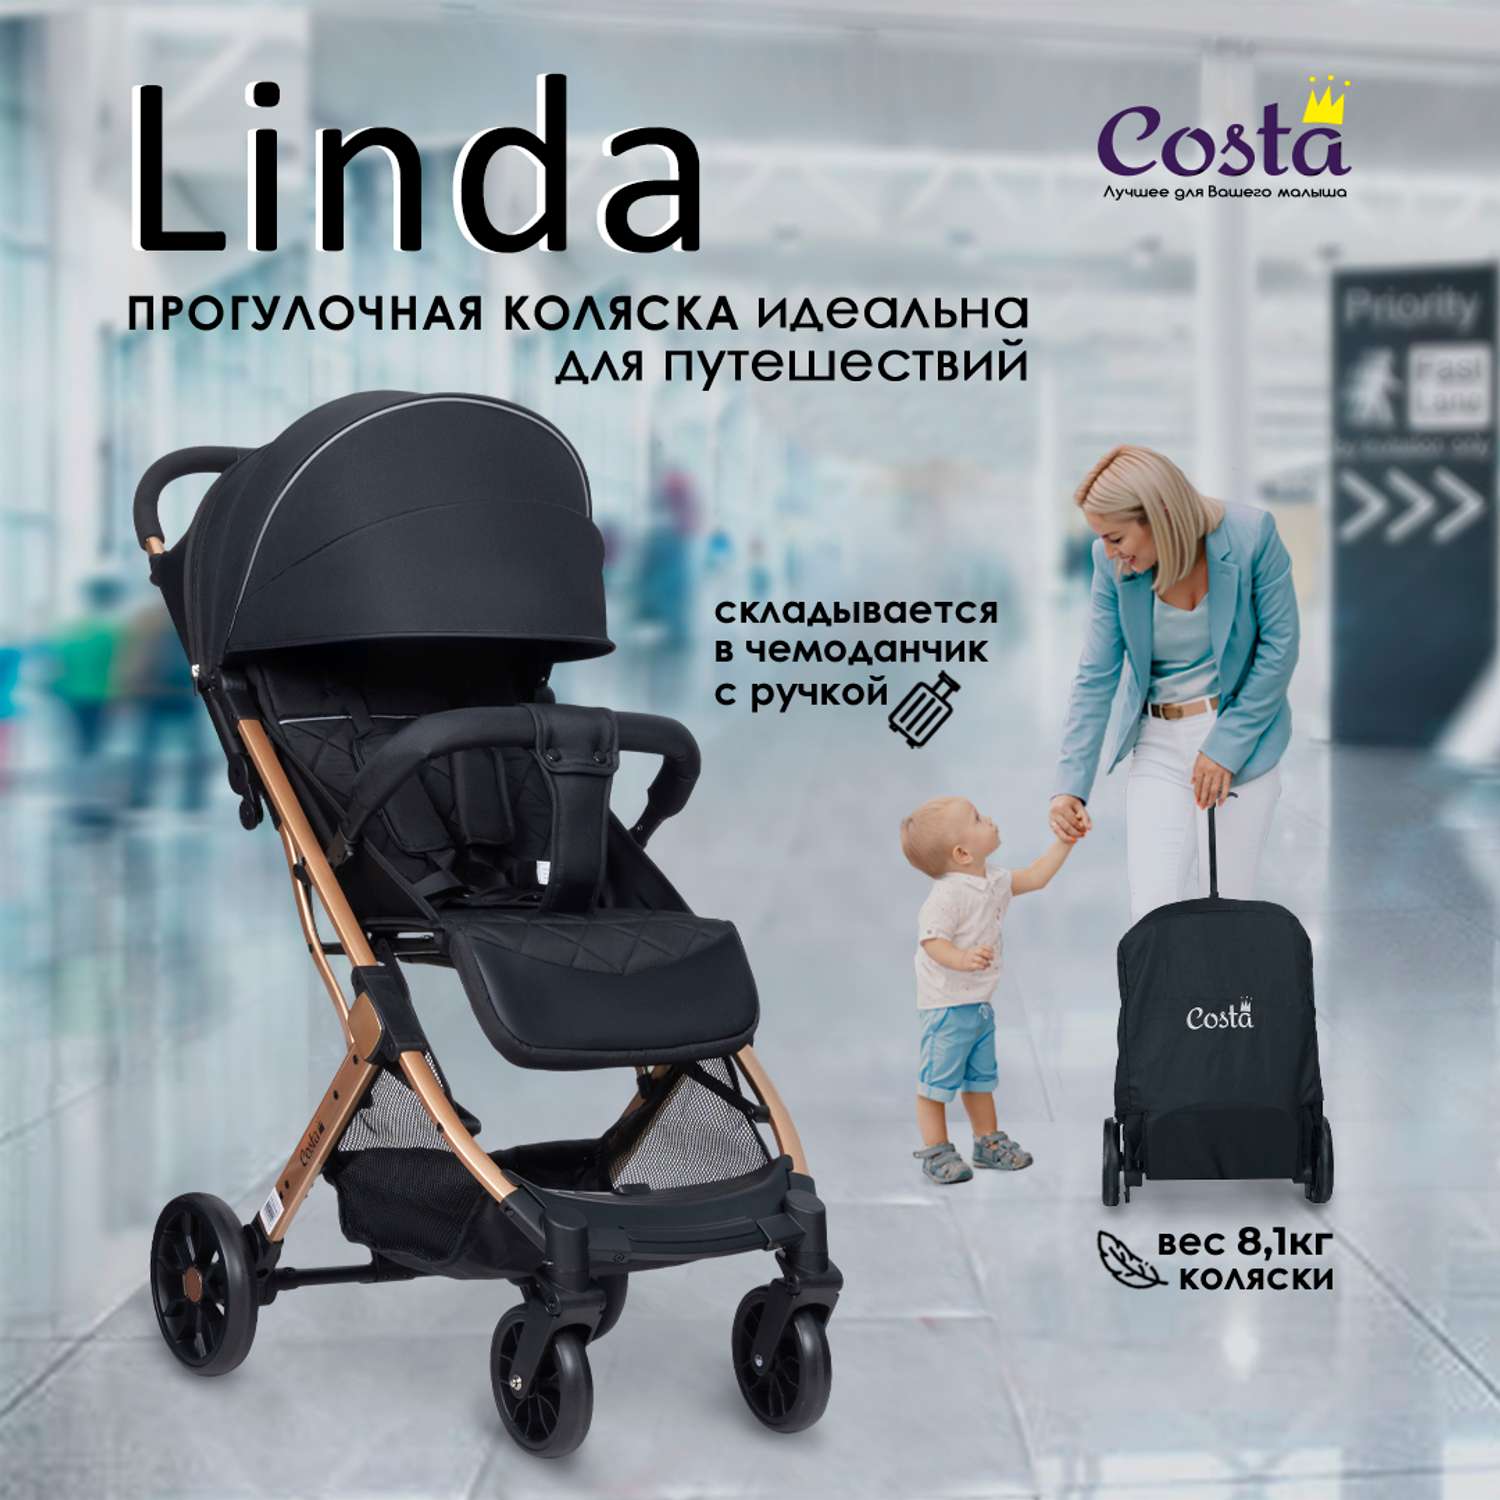 Коляска прогулочная Costa детская Linda - фото 1